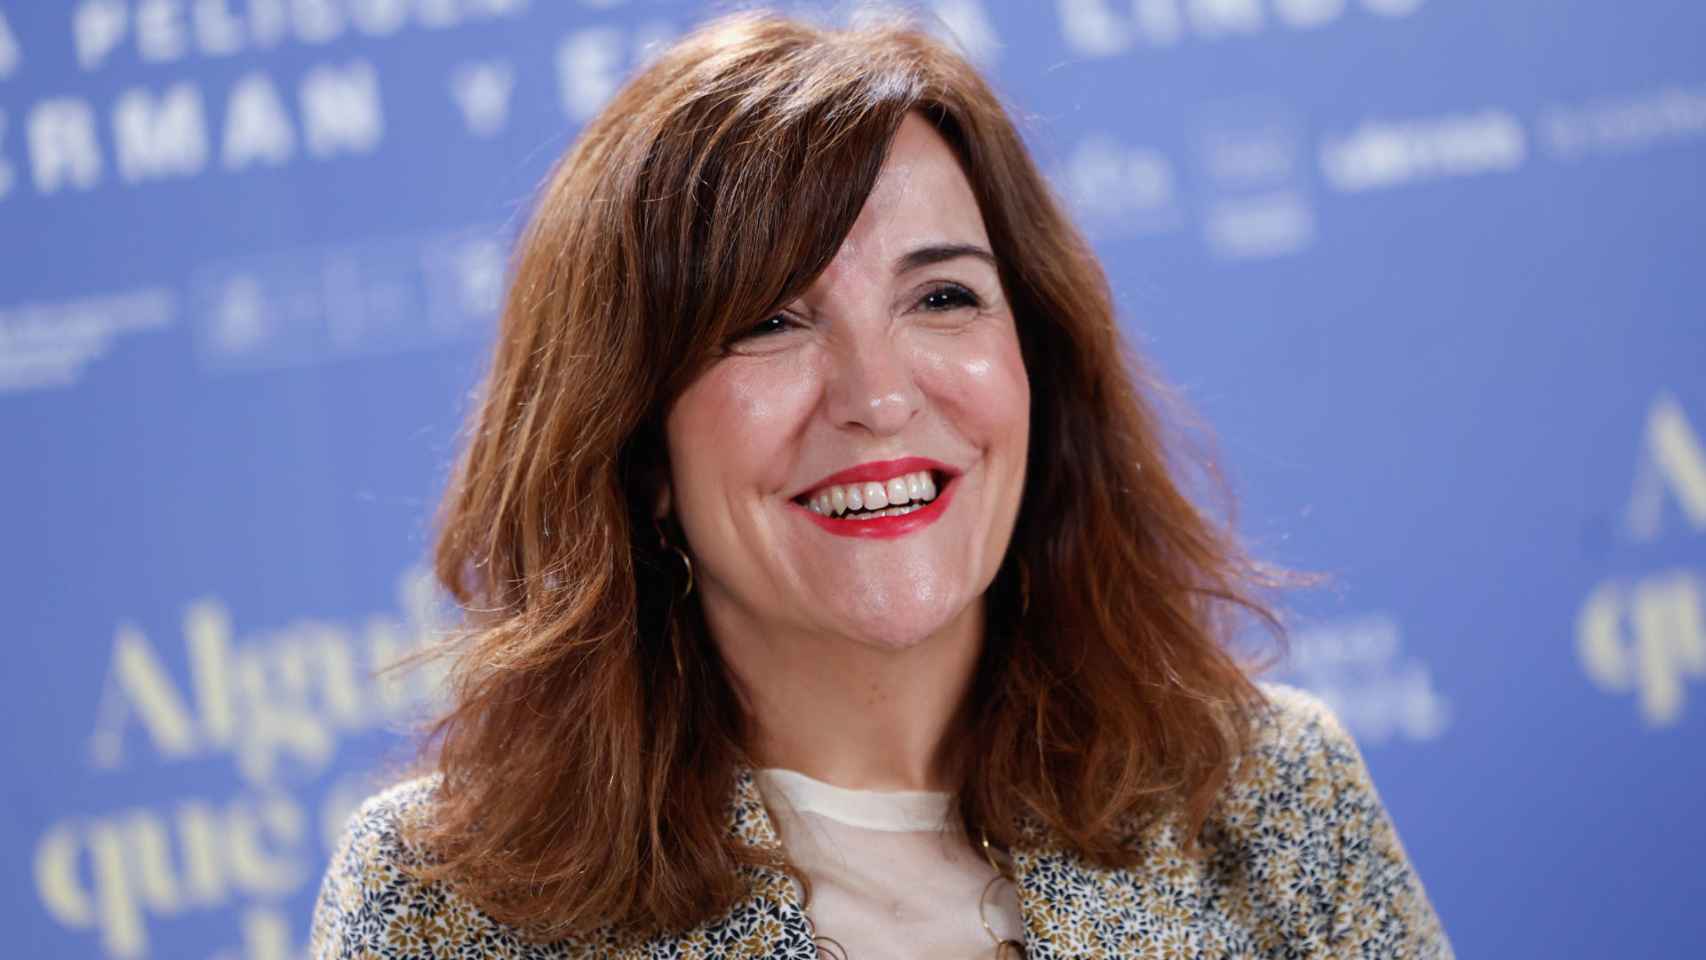 Elvira Lindo en la presentación de 'Alguien que cuide de mí' en Madrid, el 19 de abril. Foto: EFE/Daniel González